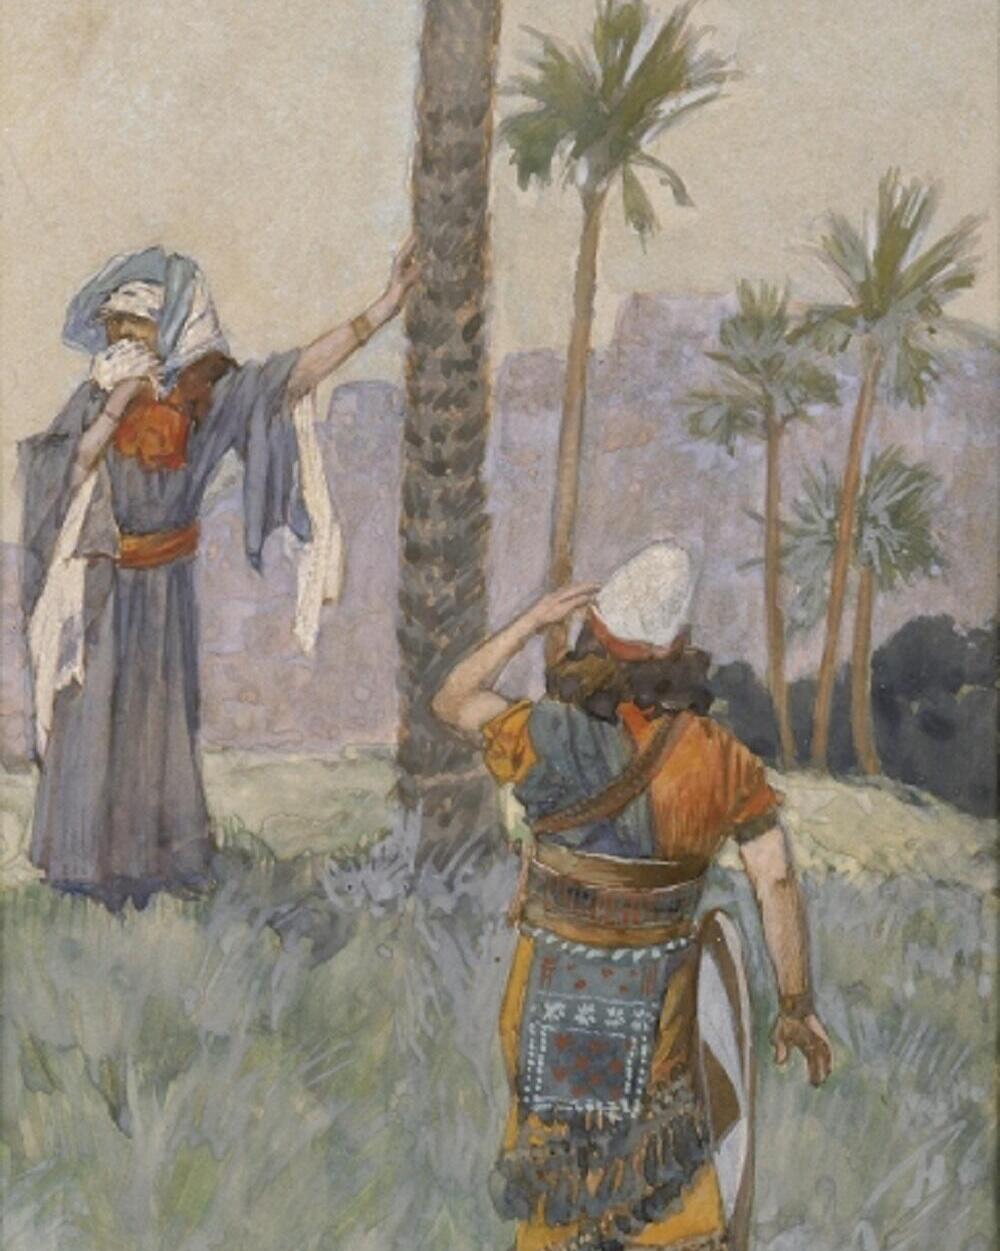 איור המתאר את דבורה הנביאה בעודה עומדת תחת עצי דקל